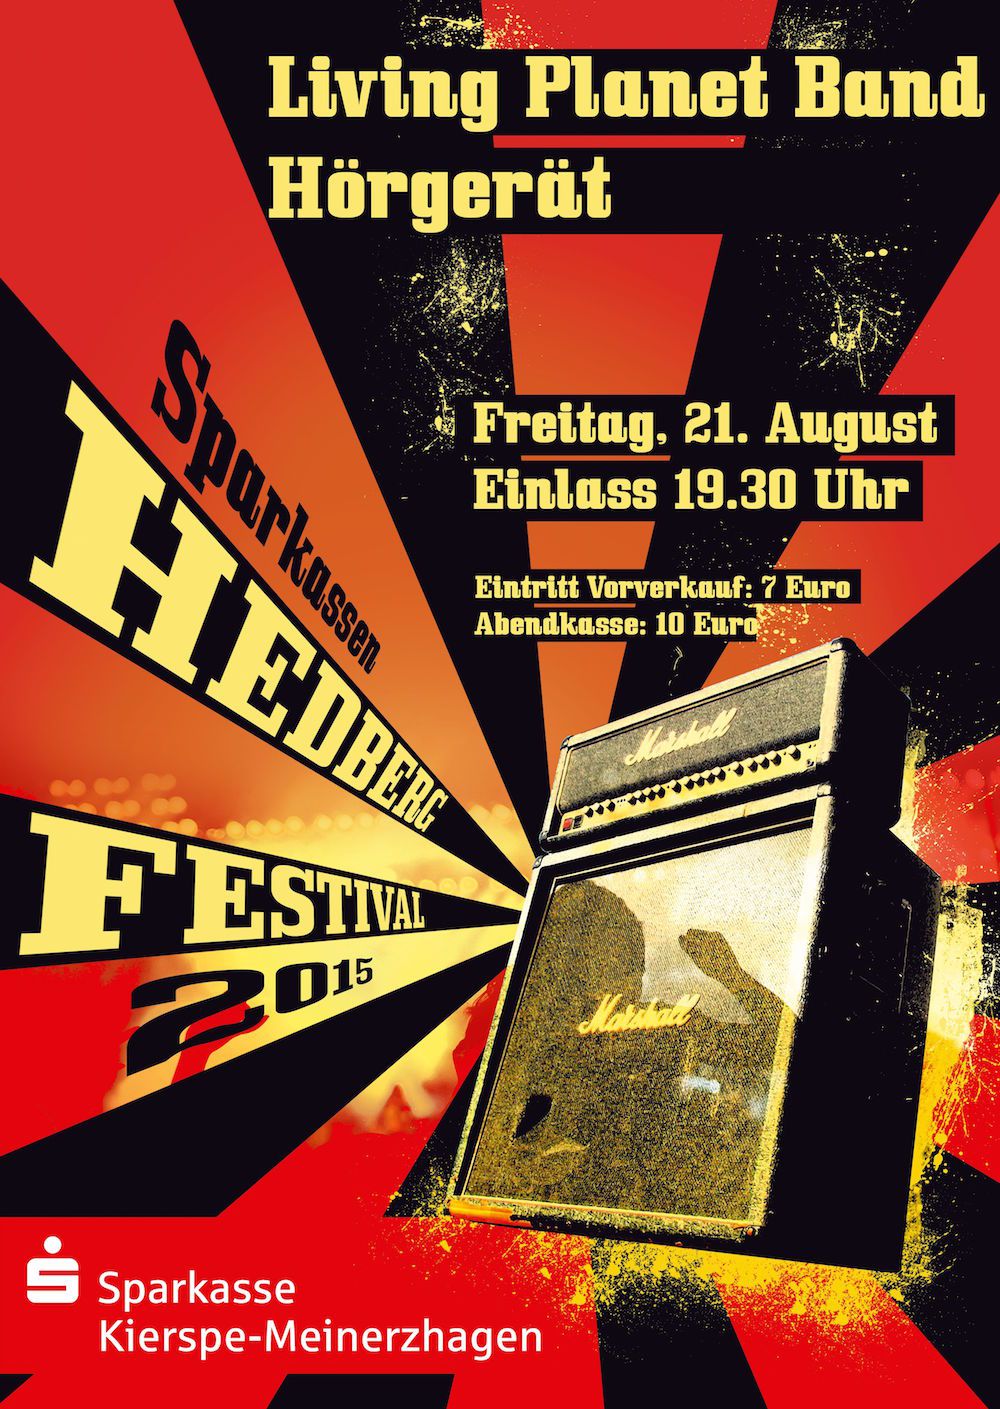 Hedberg Festival 2015